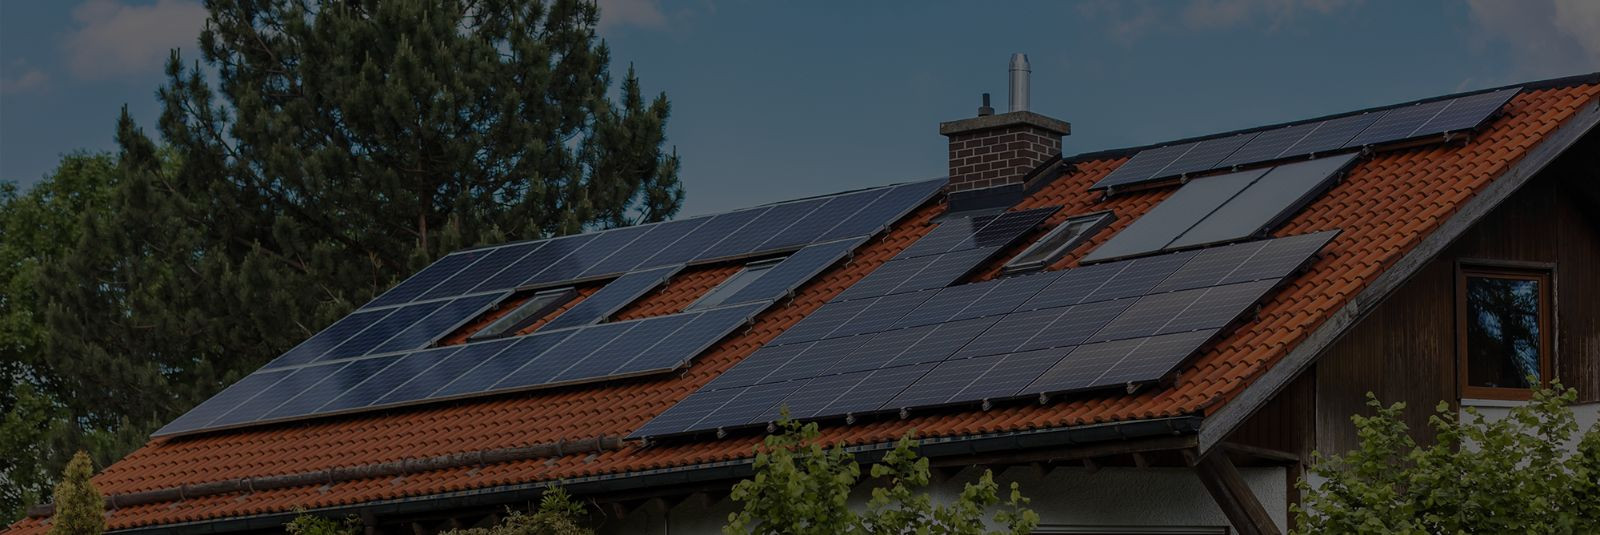 Kas oled mõelnud päikeseenergia võimalustele oma kodus? ProEnergy, ...